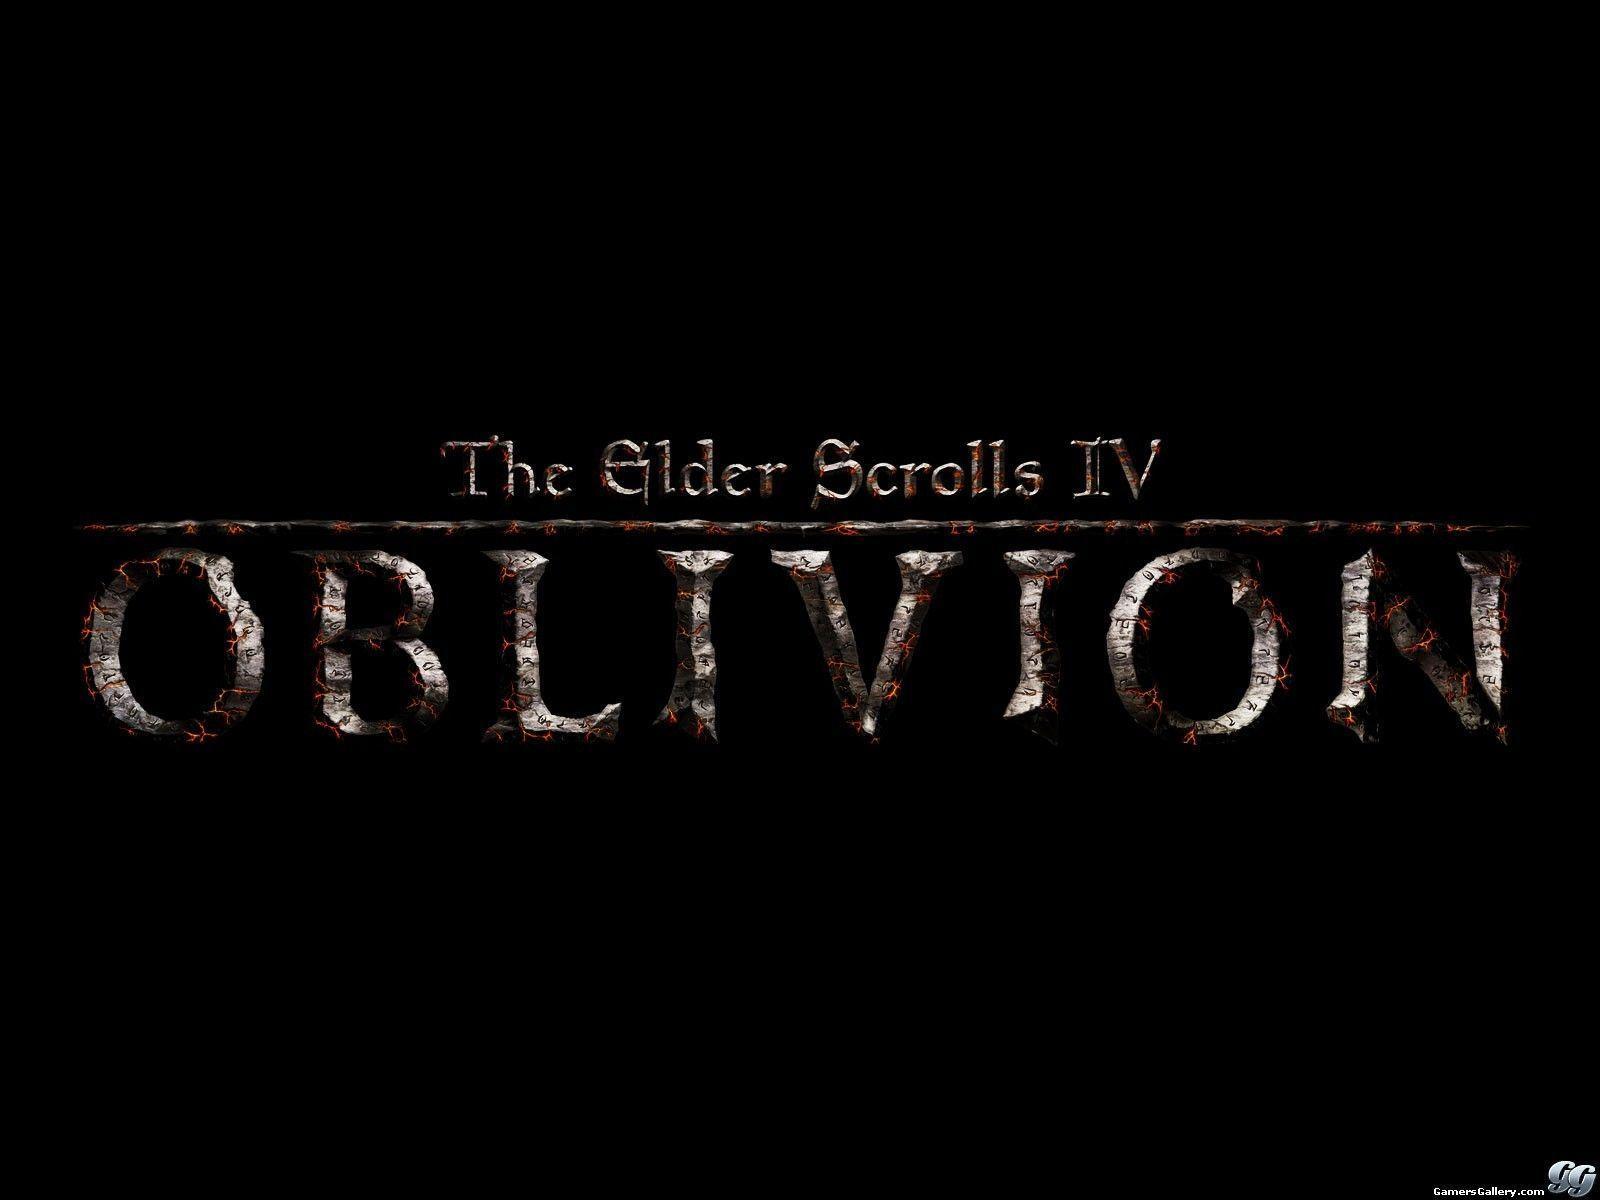 The Elder Scrolls IV Oblivion Wallpaper - Image And Wallpaper